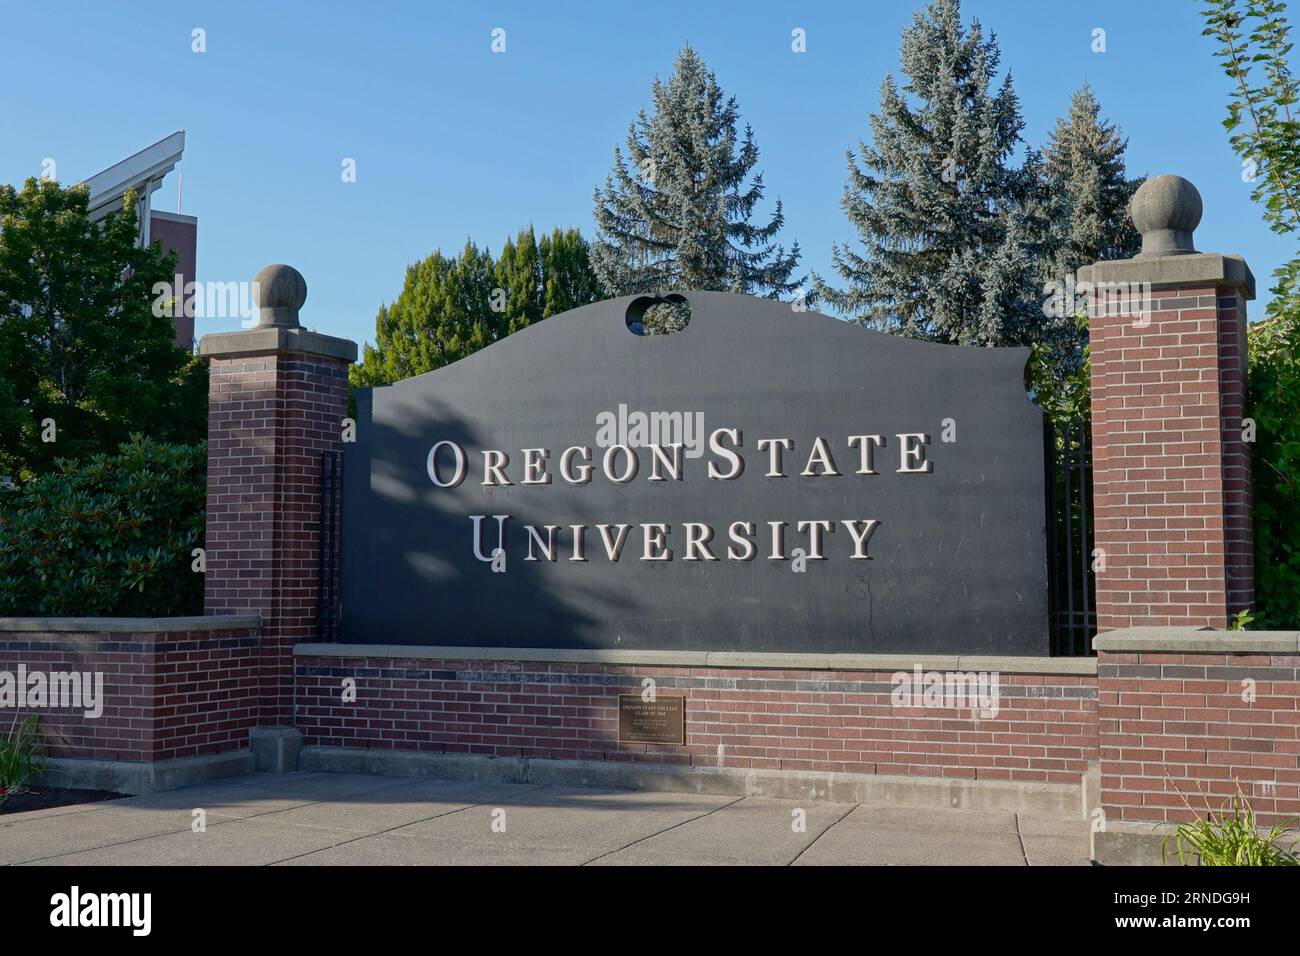 Die Oregon State University ist eine 1868 gegründete staatliche Forschungsuniversität mit Sitz in Corvallis, Oregon. Stockfoto